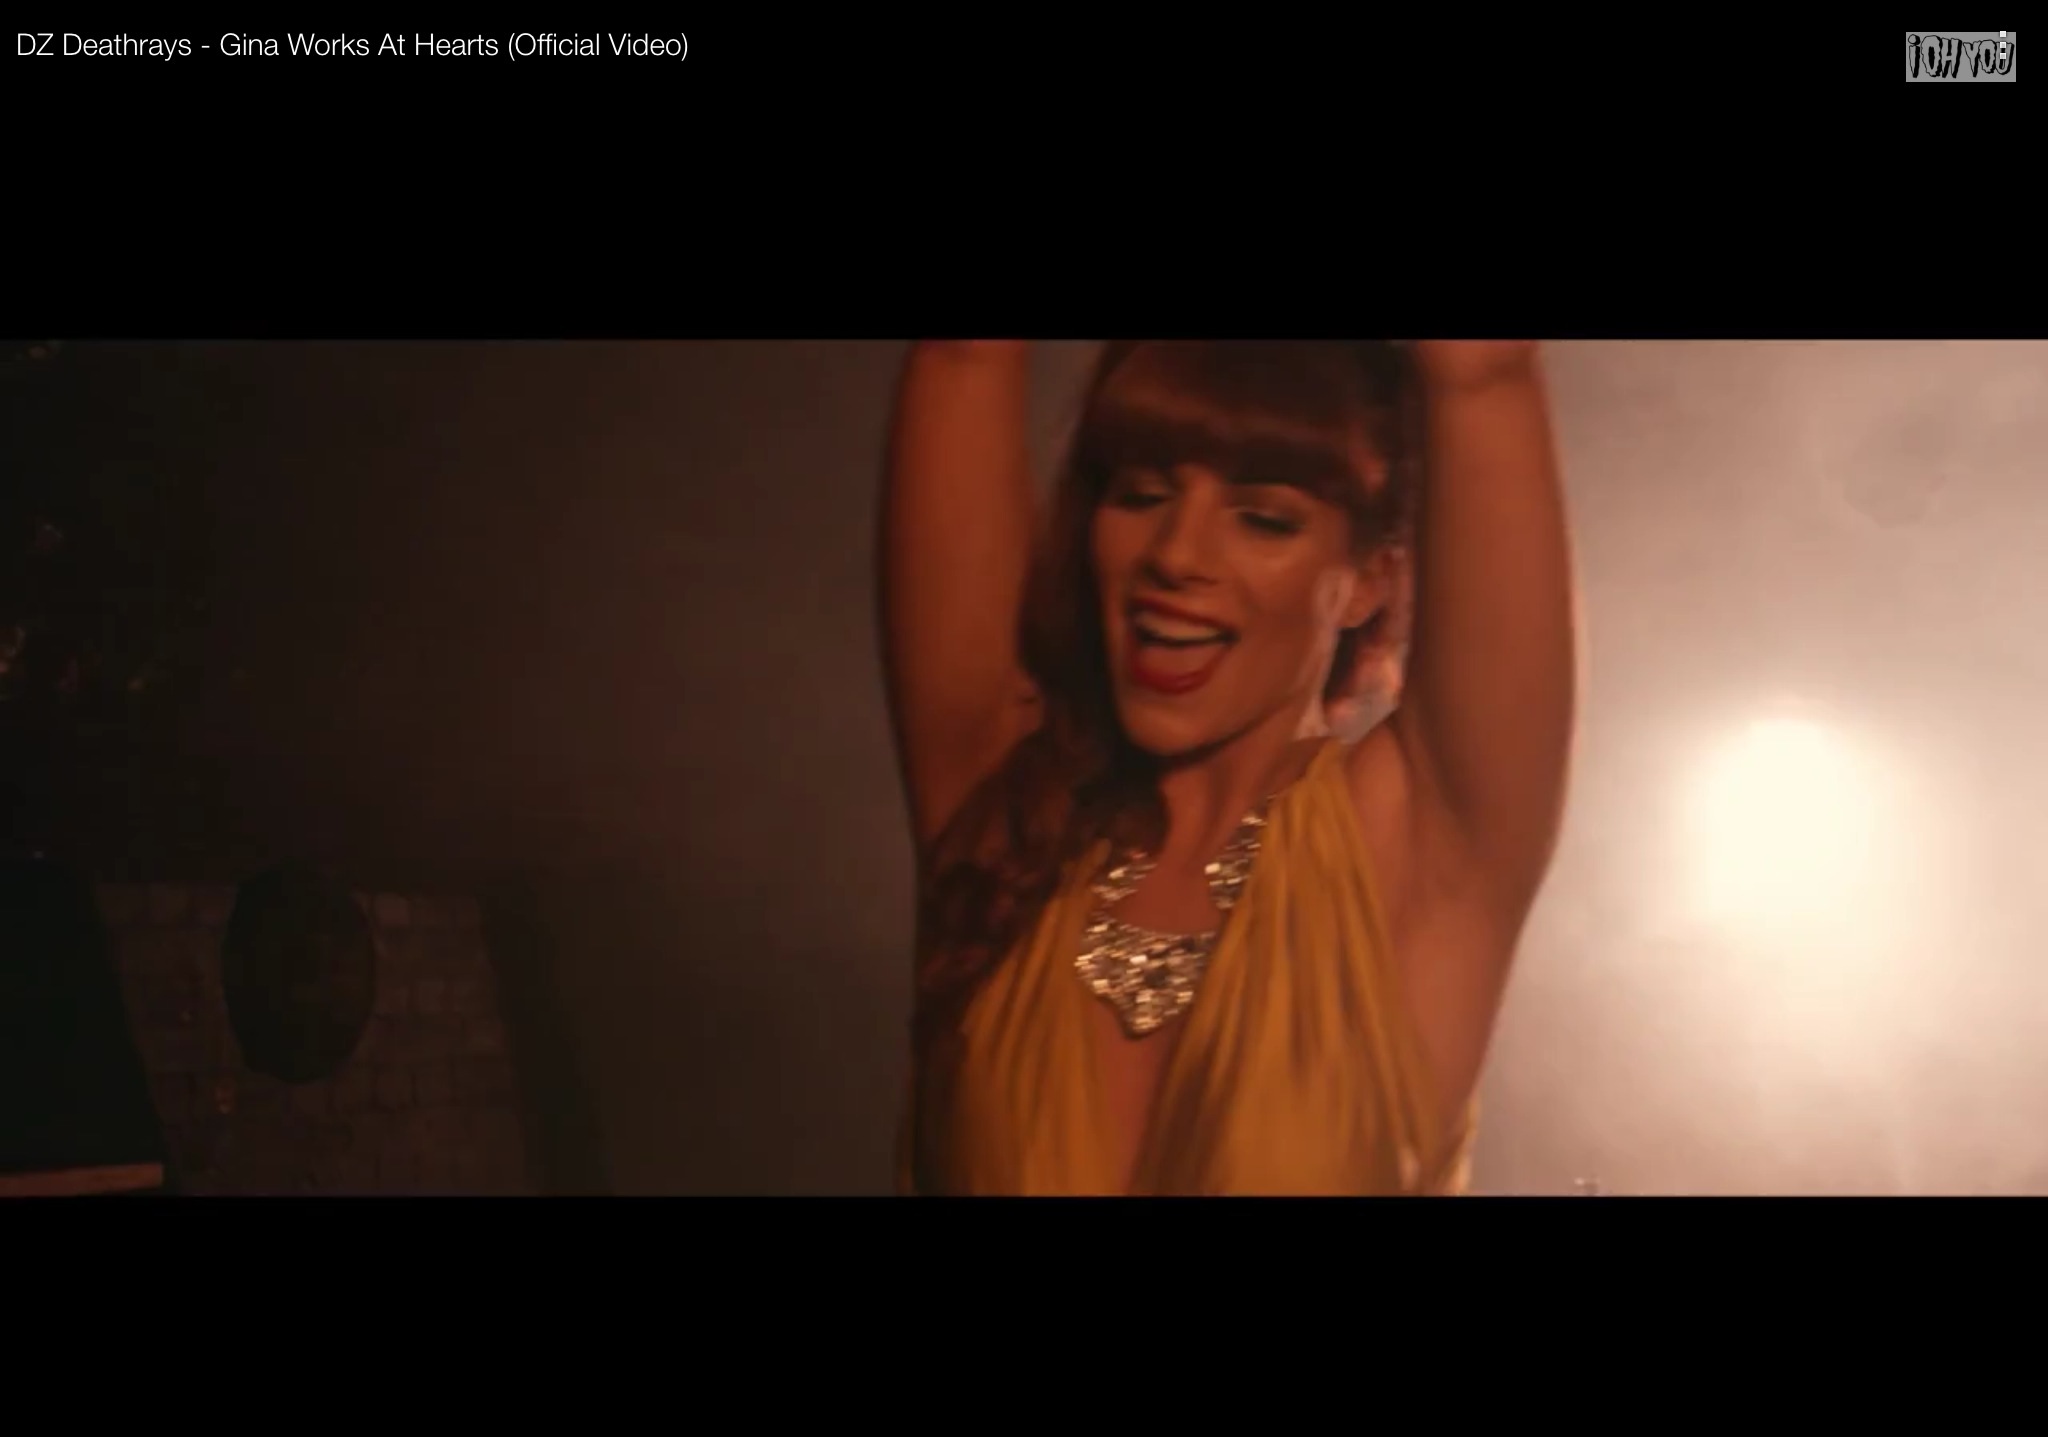 Linda Jean Bruno in DZ Deathrays music video 